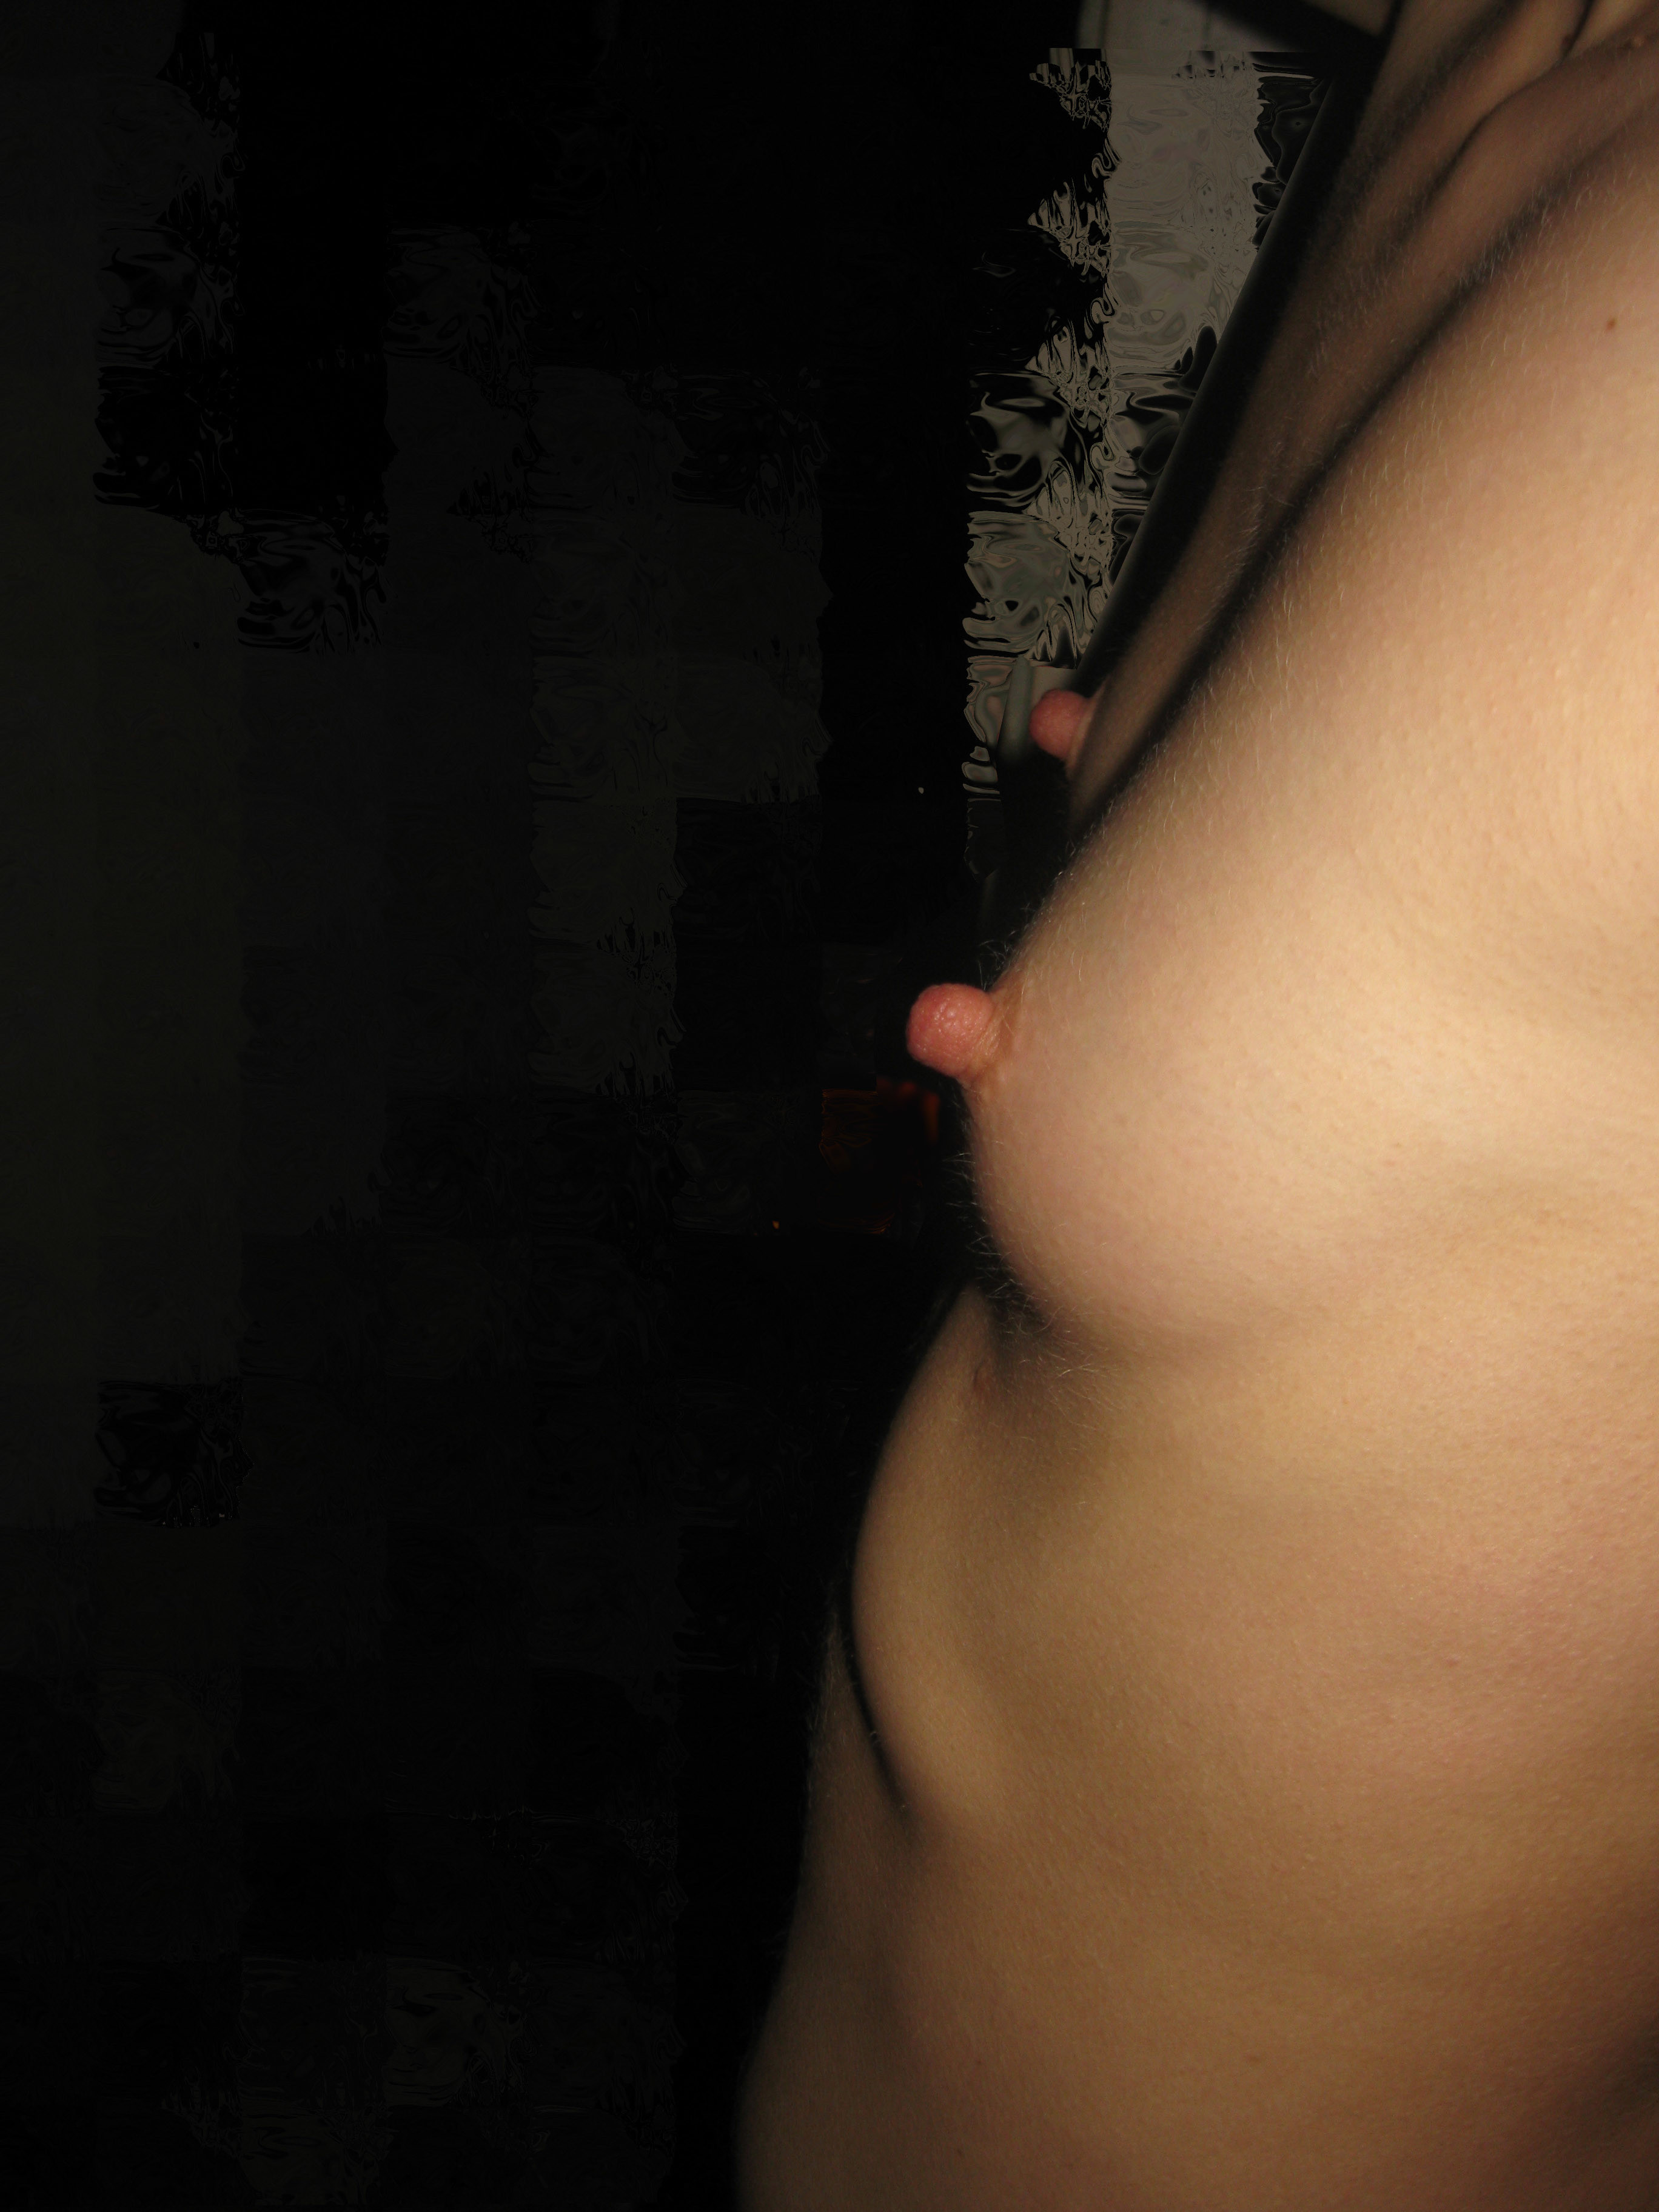 небольшие груди жены фото 21